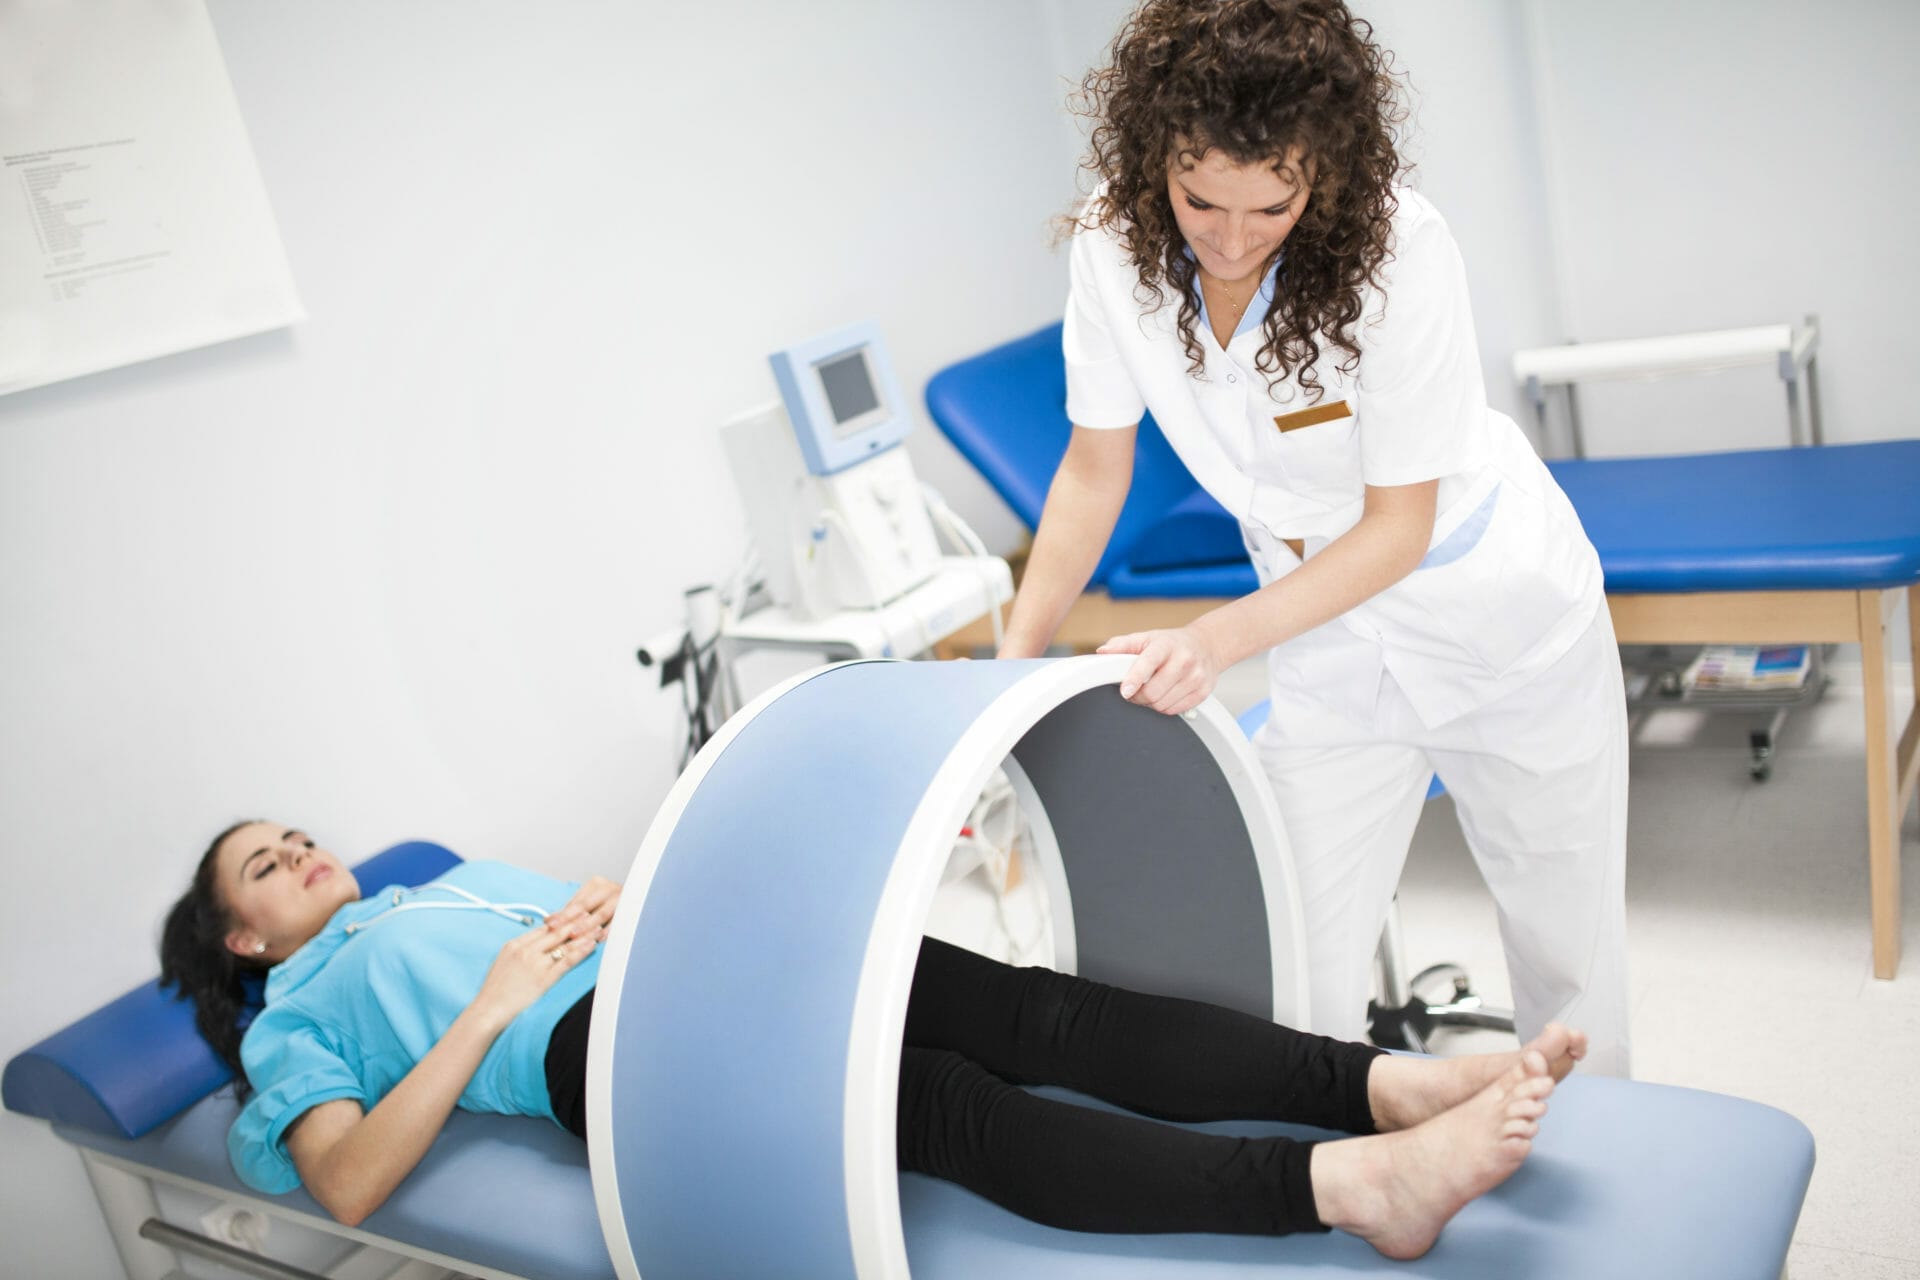 Electroterapia en fisioterapia: ¿Qué es y cómo funciona? - Material Estética